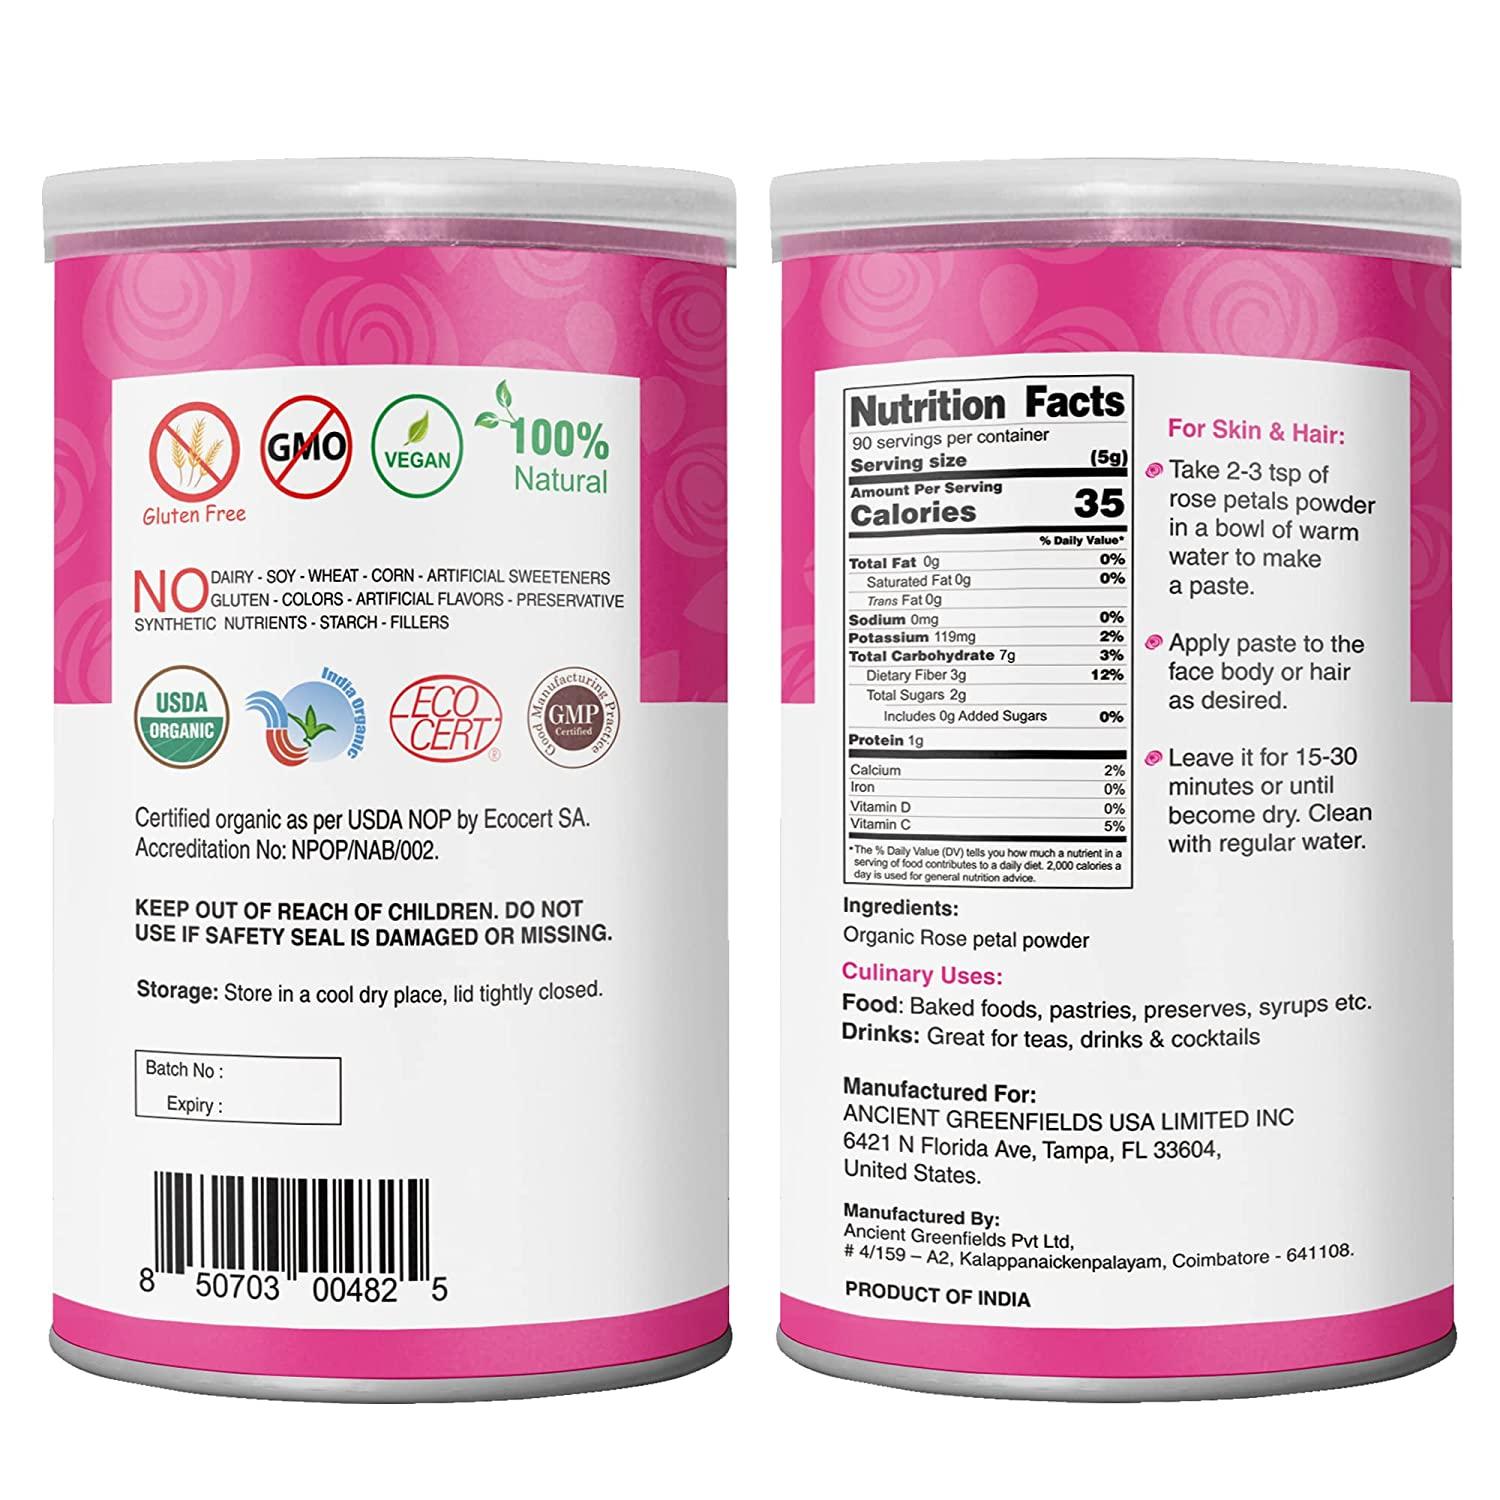 Organic Veda Edible Rose Petal Powder - Edible Rose Dusting Powder